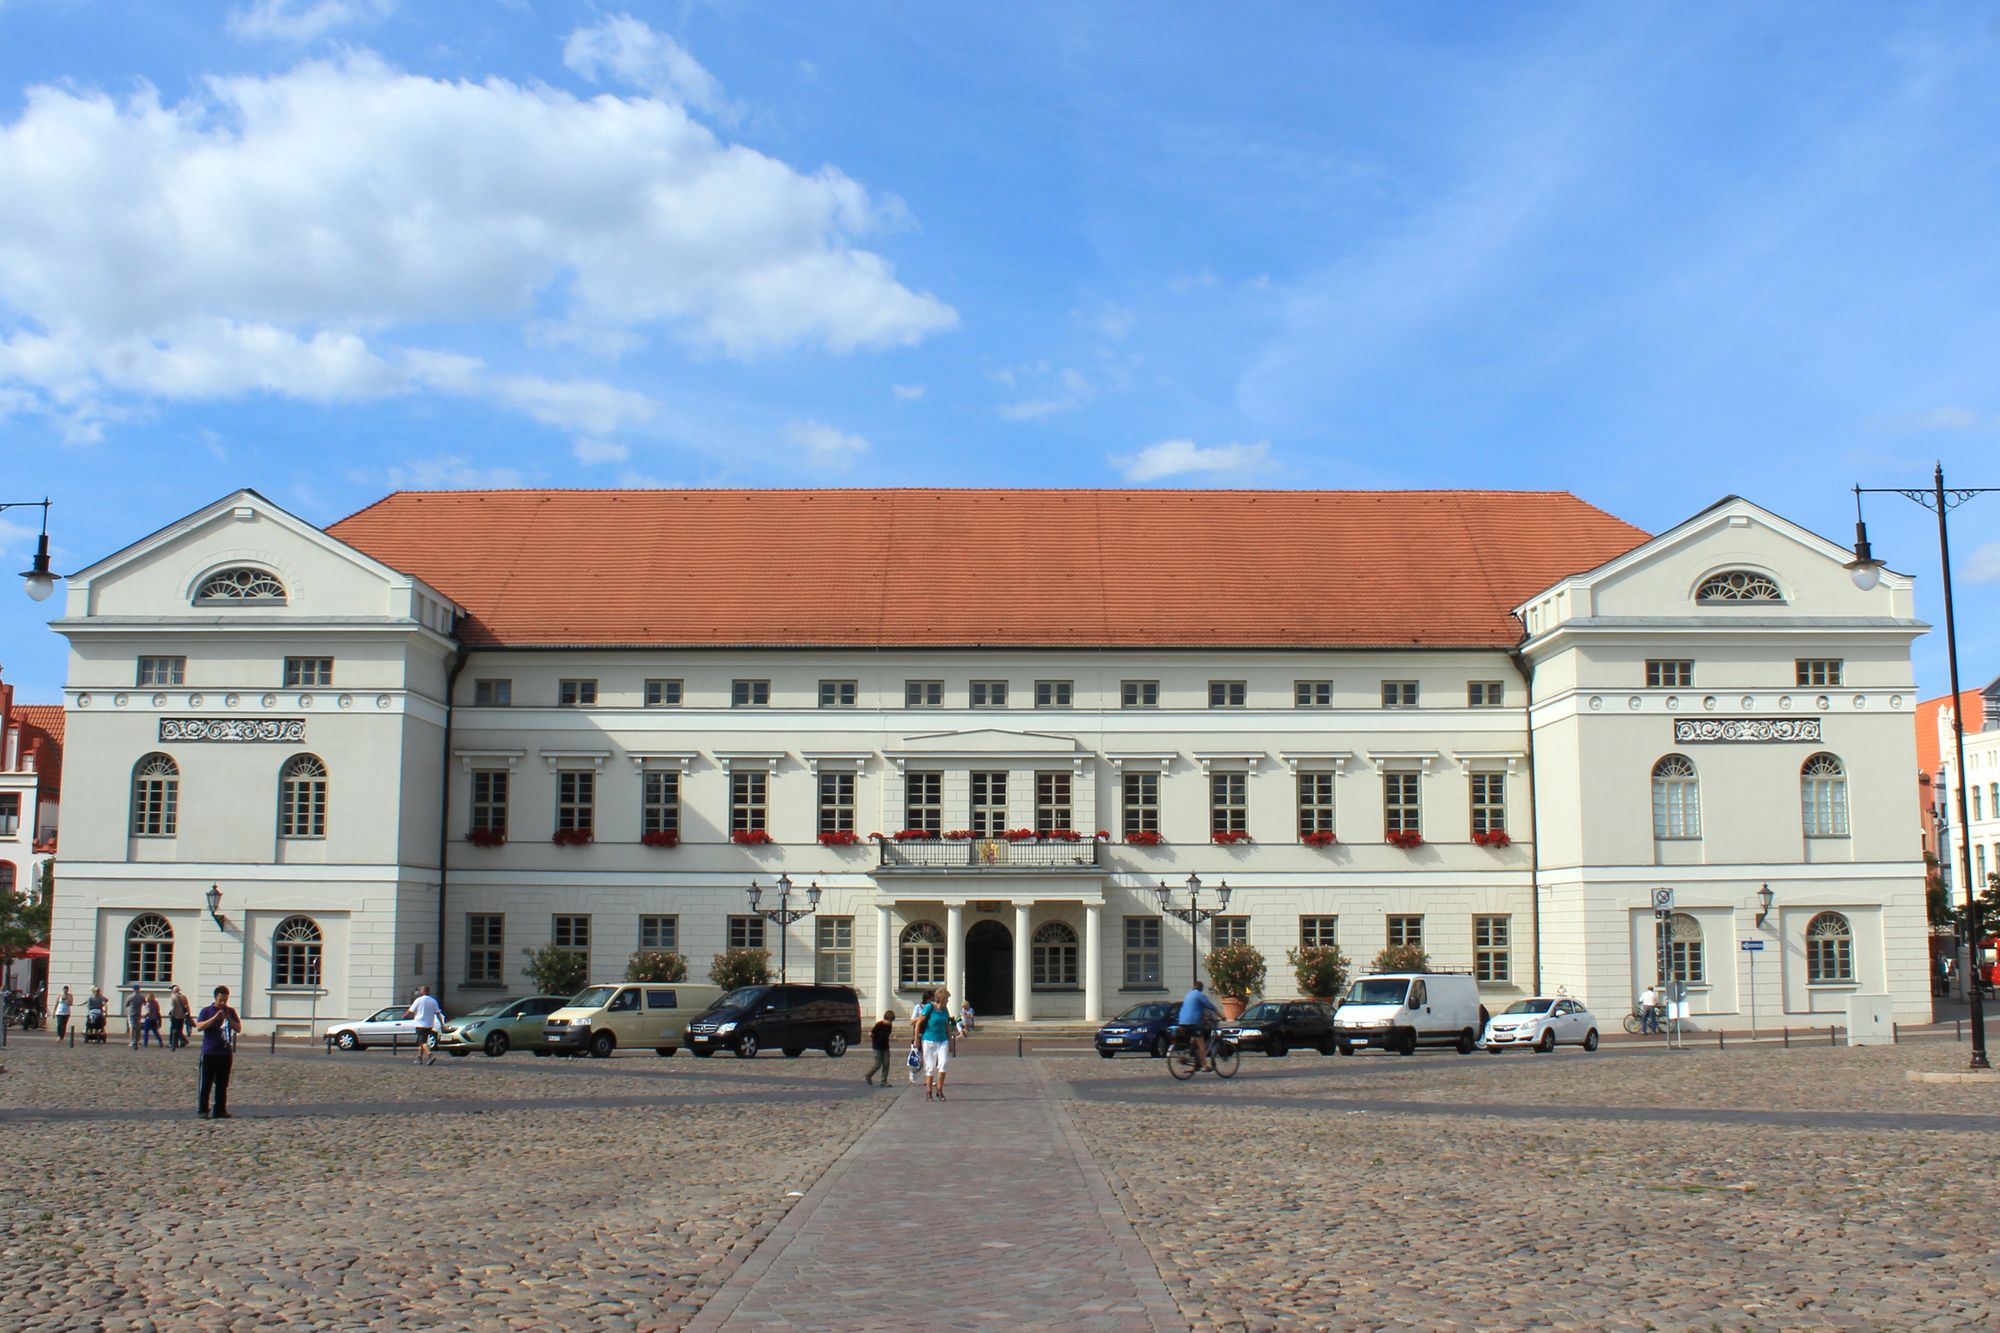 Sehenswertes in Wismar Rathaus